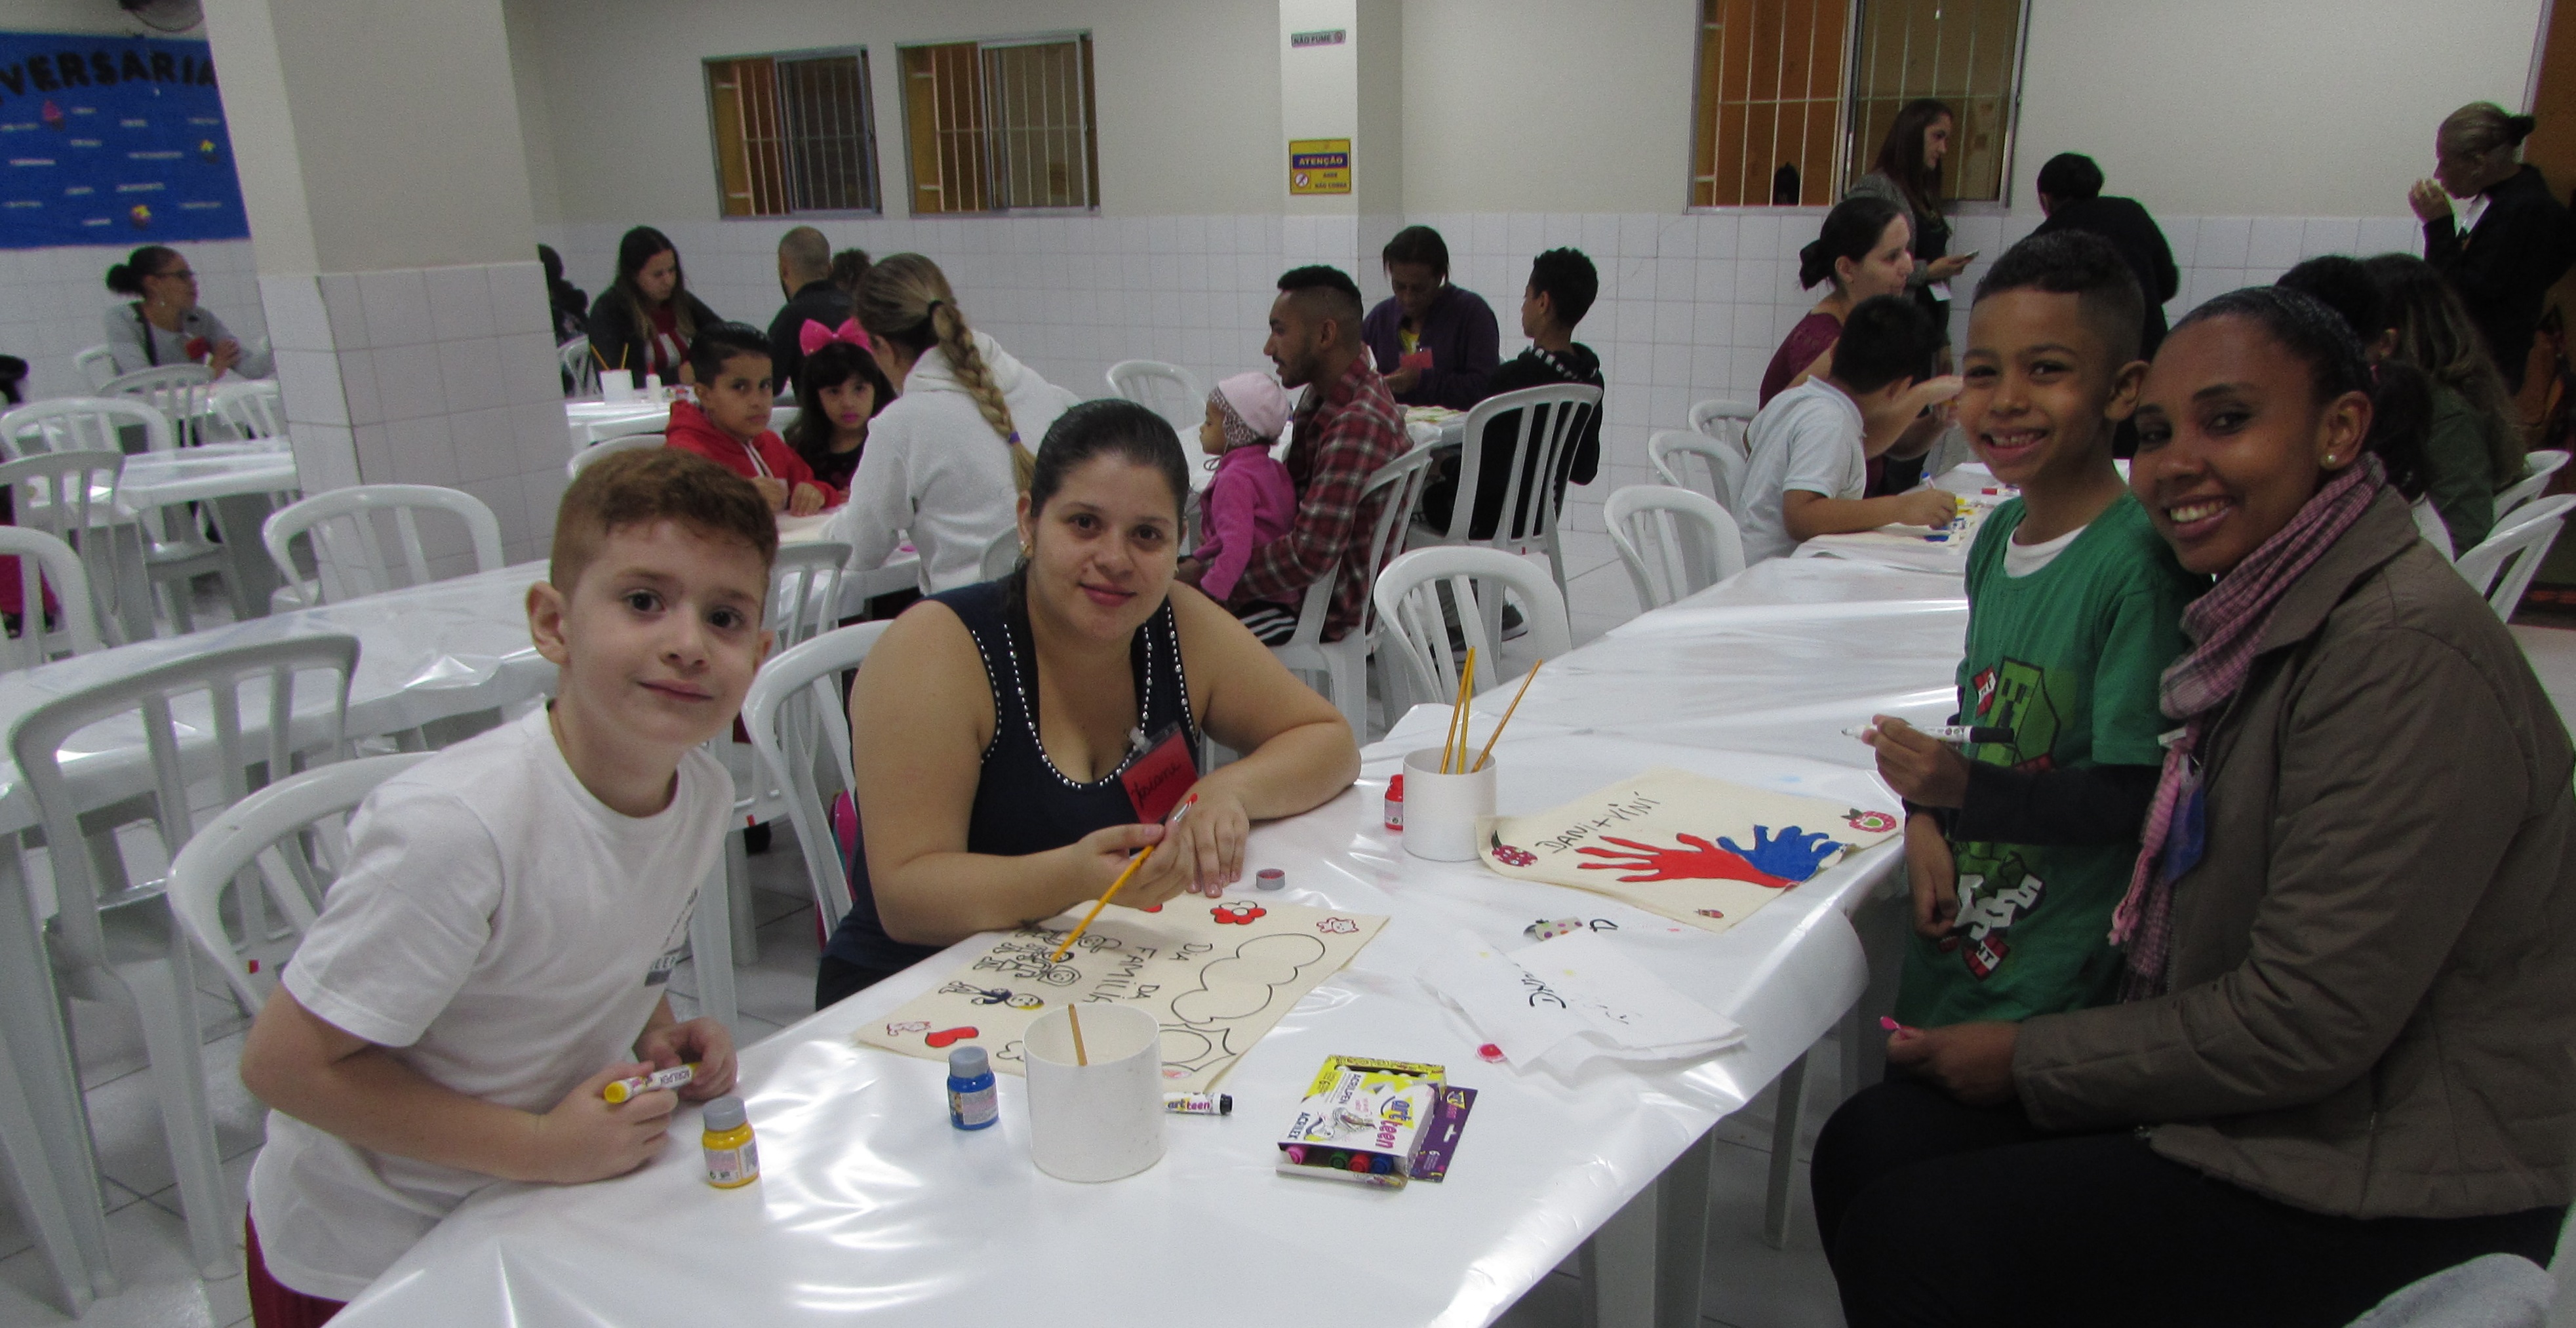 Em um espaço fechado, duas mães posam com seus filhos meninos enquanto estão fazendo atividades artísticas em uma mesa branca. Ao fundo estão sentadas as outras famílias